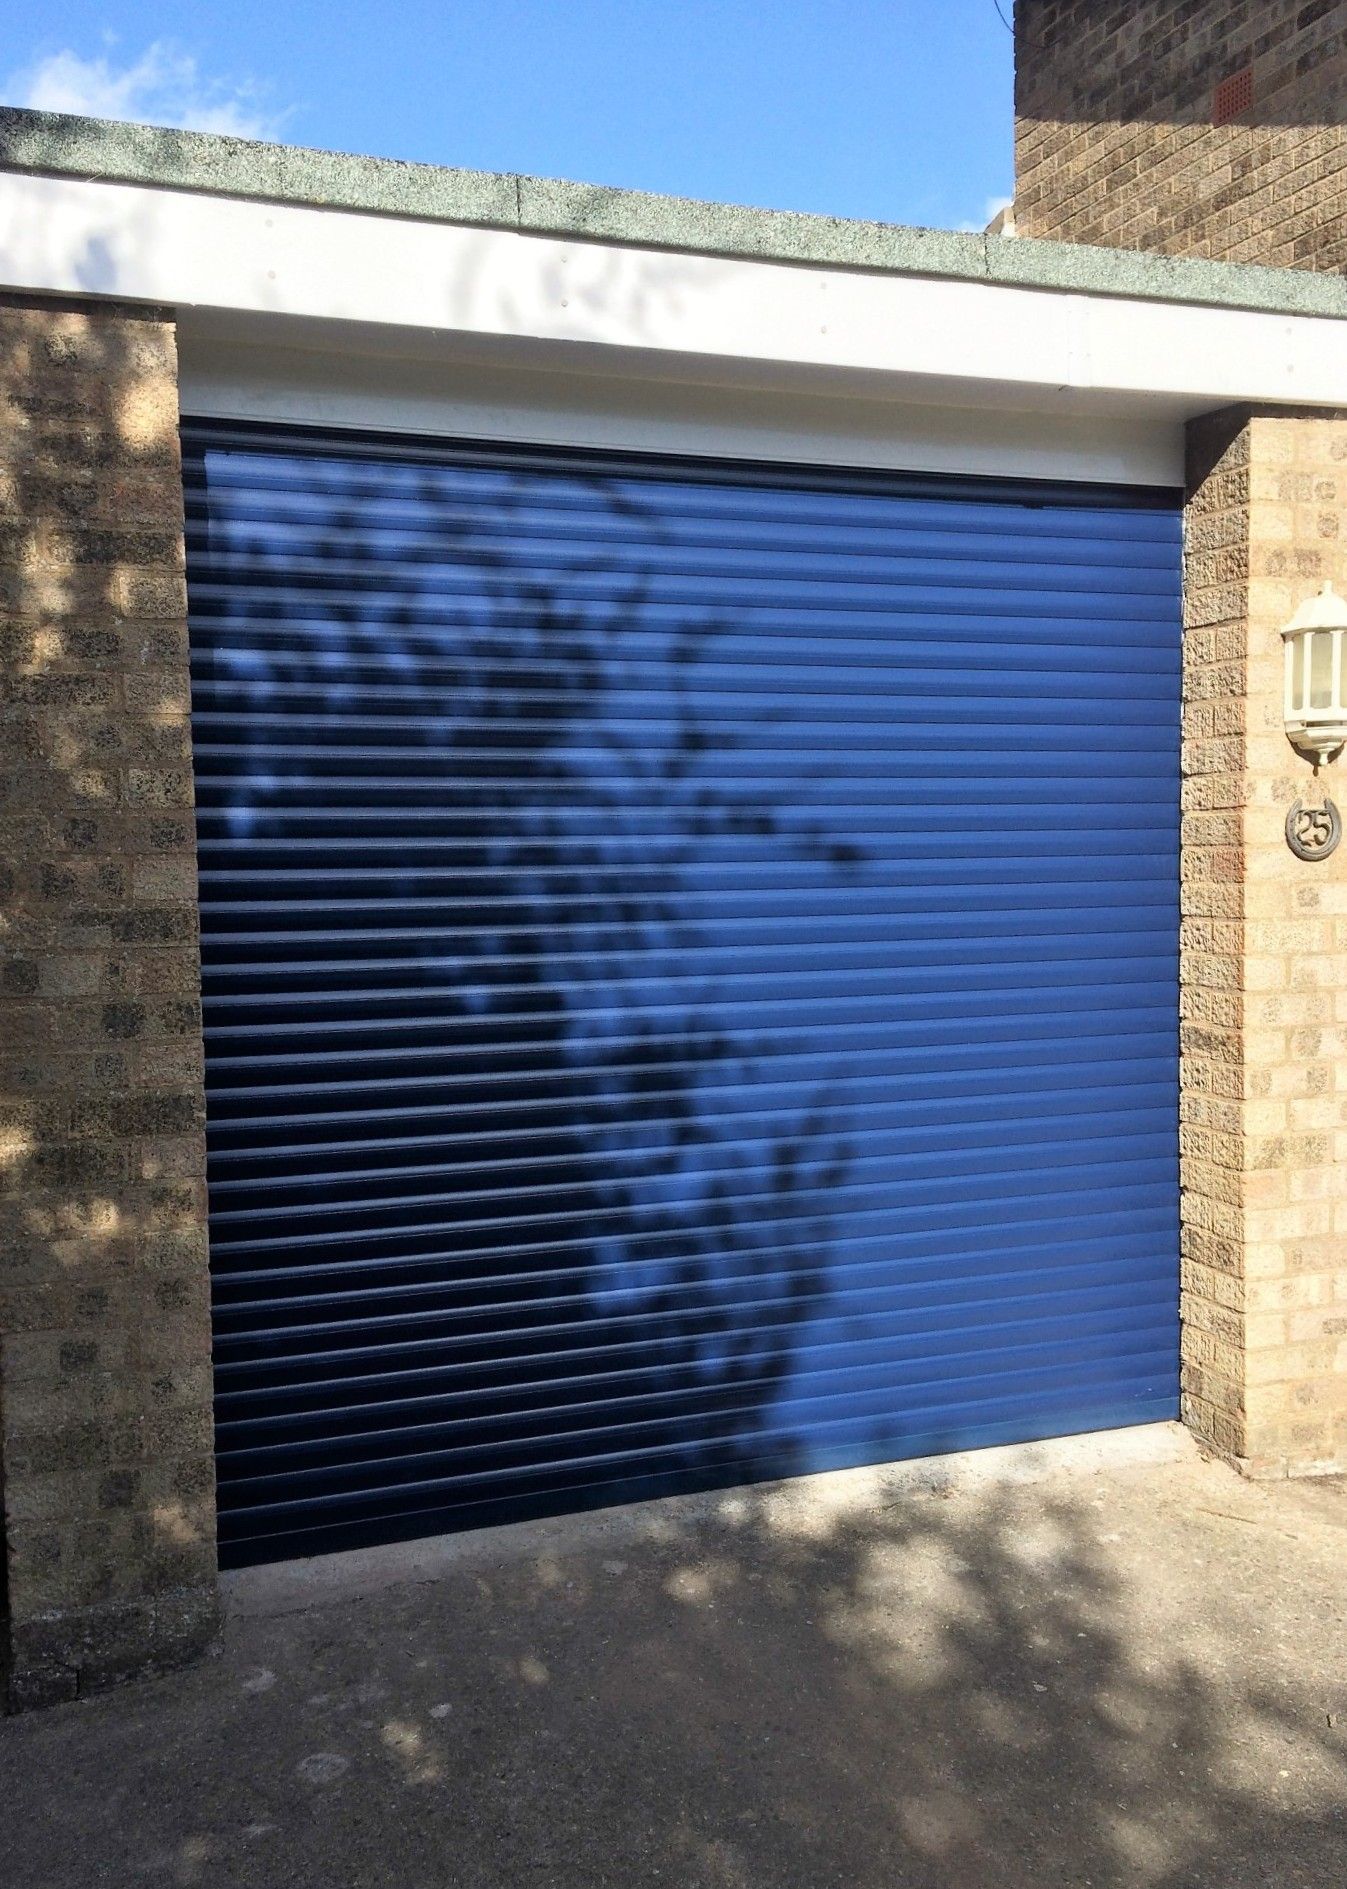 A blue garage door